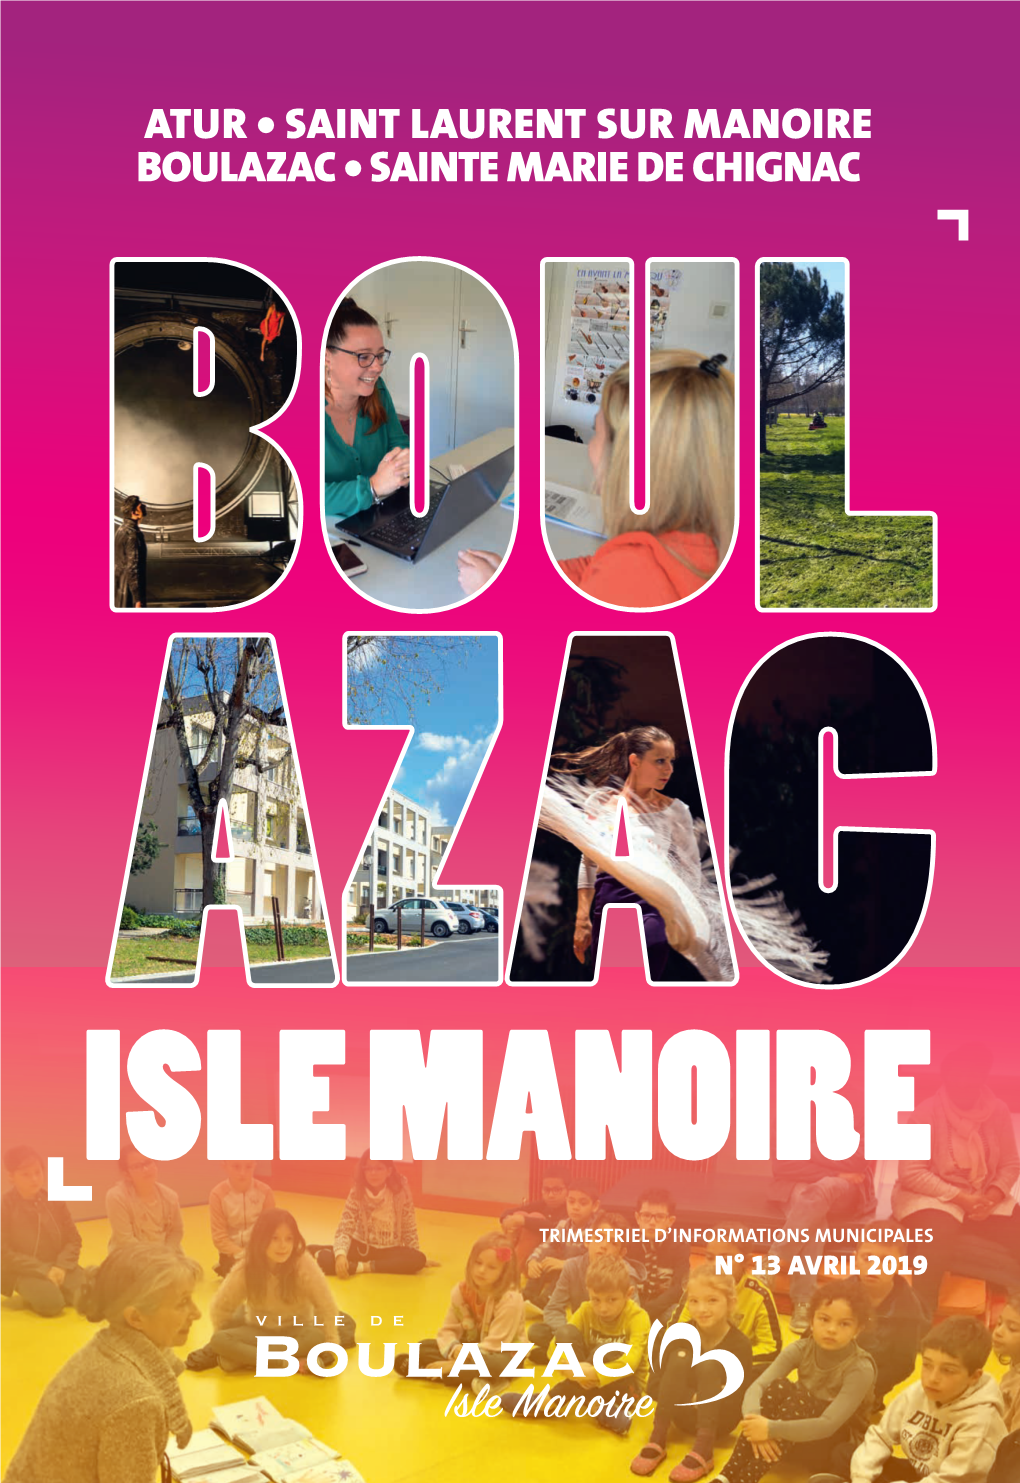 Isle Manoire